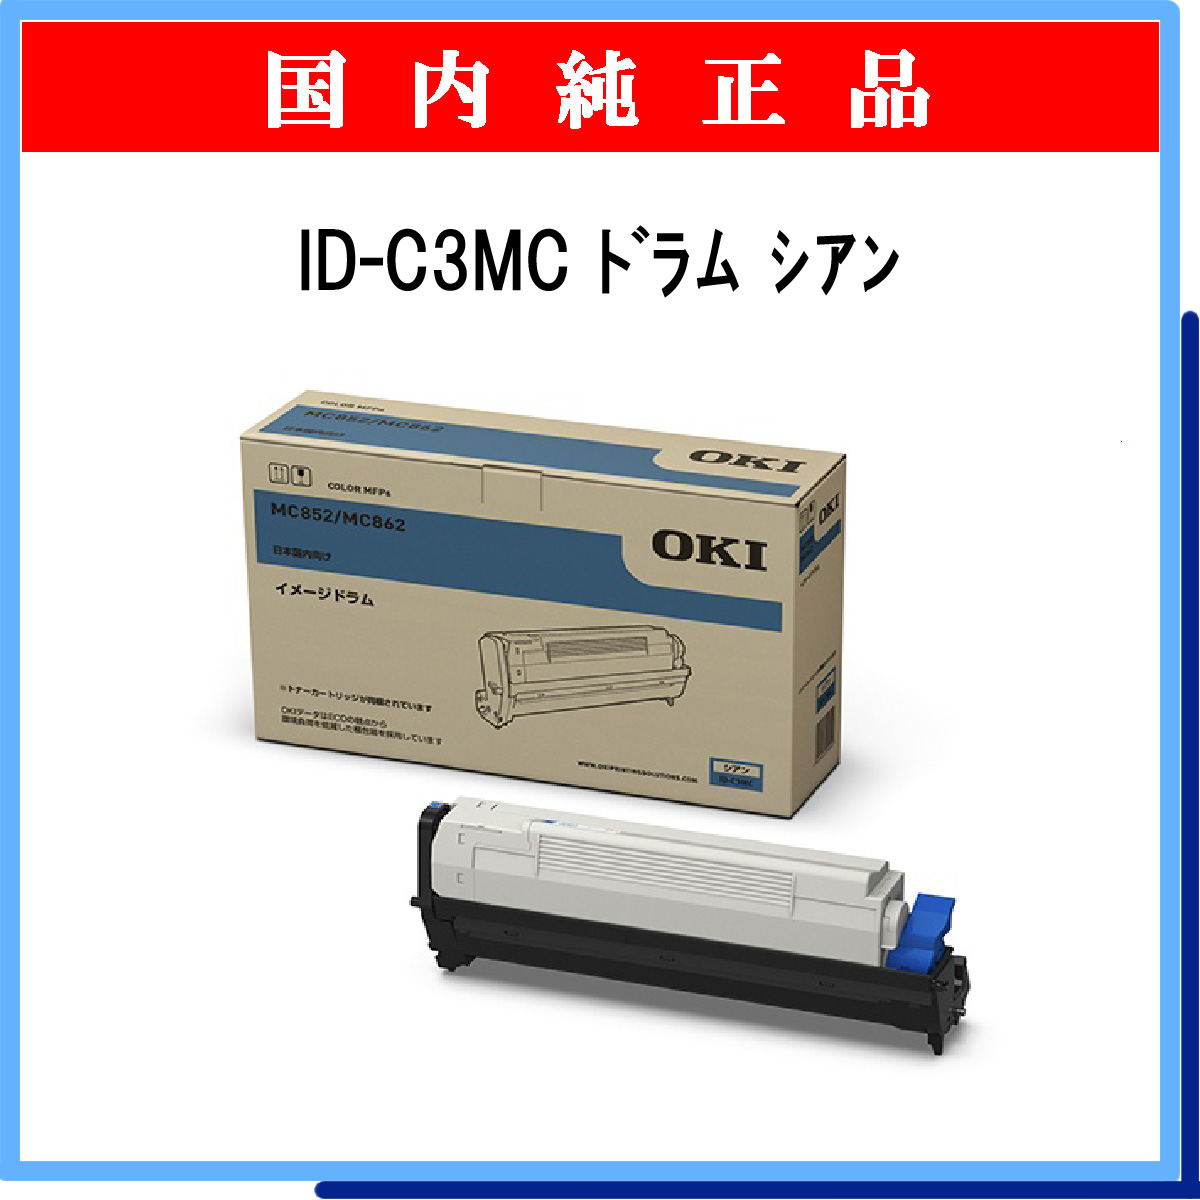 OKI ID-C3MM-